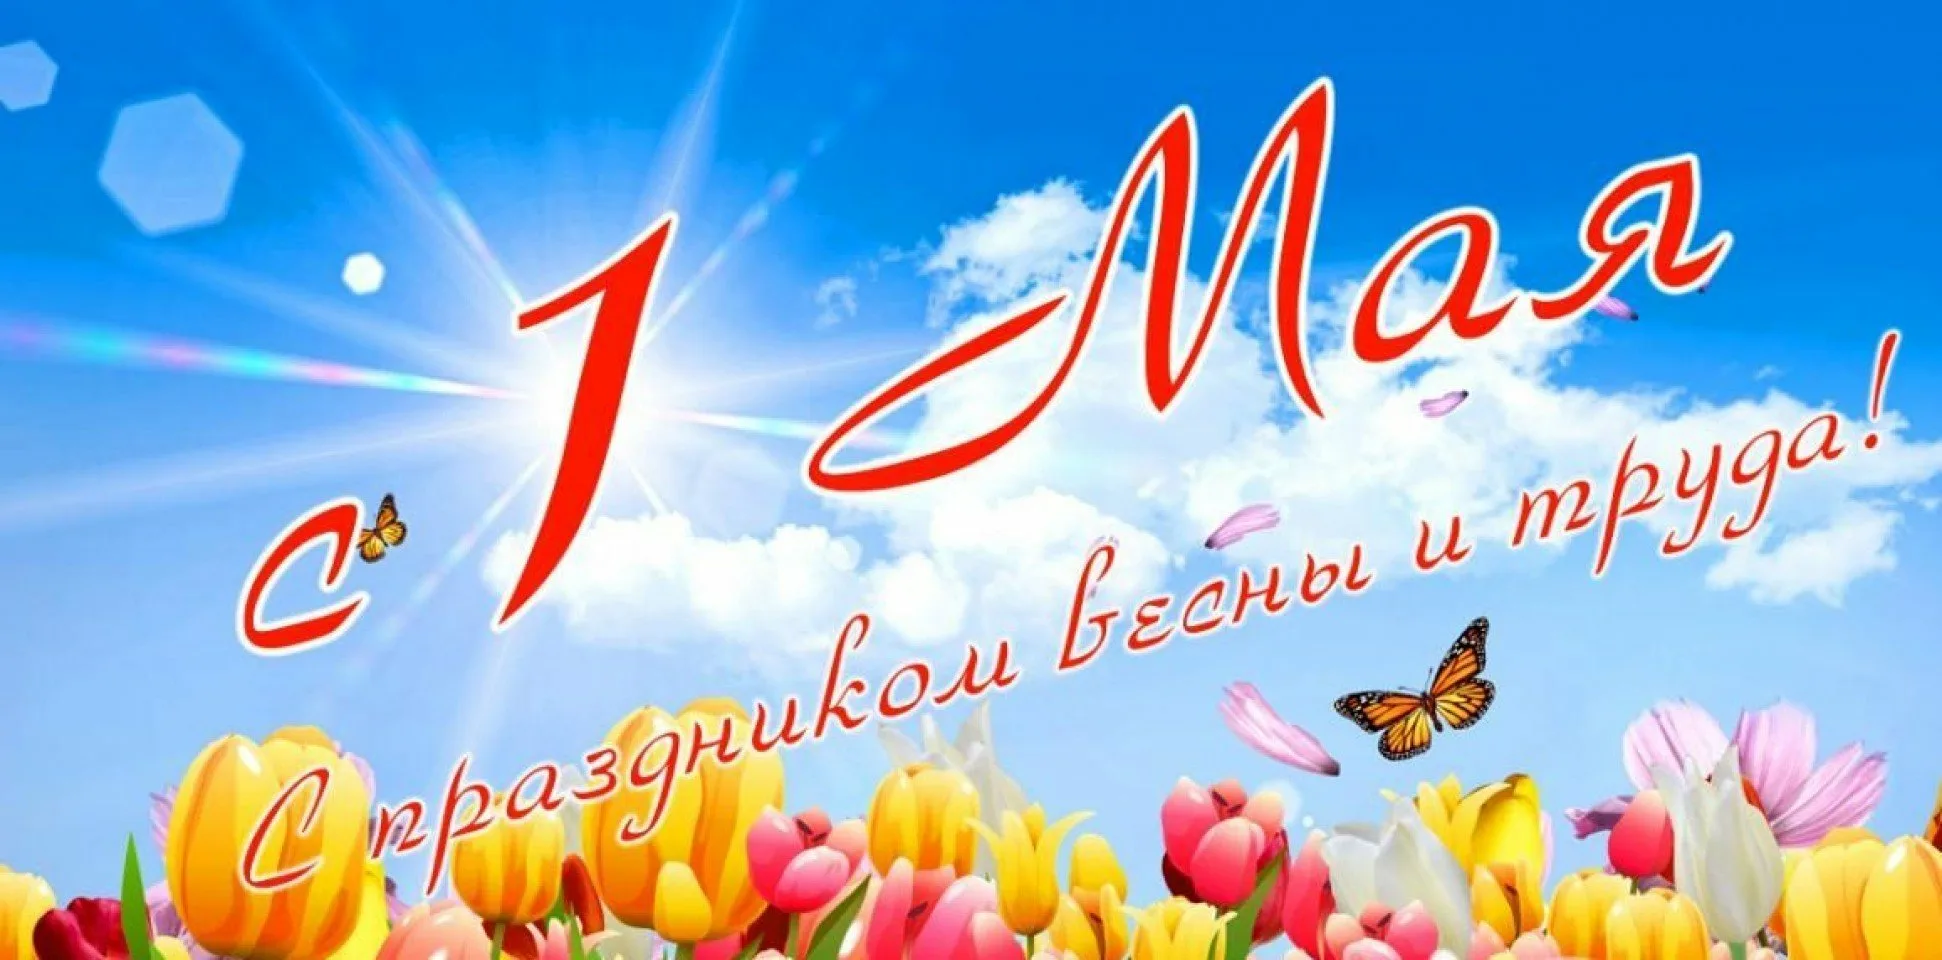 1 мая 230. 1 Мая. 1 Мая праздник весны и труда. Поздравление с 1 мая. 1 Мая праздник.